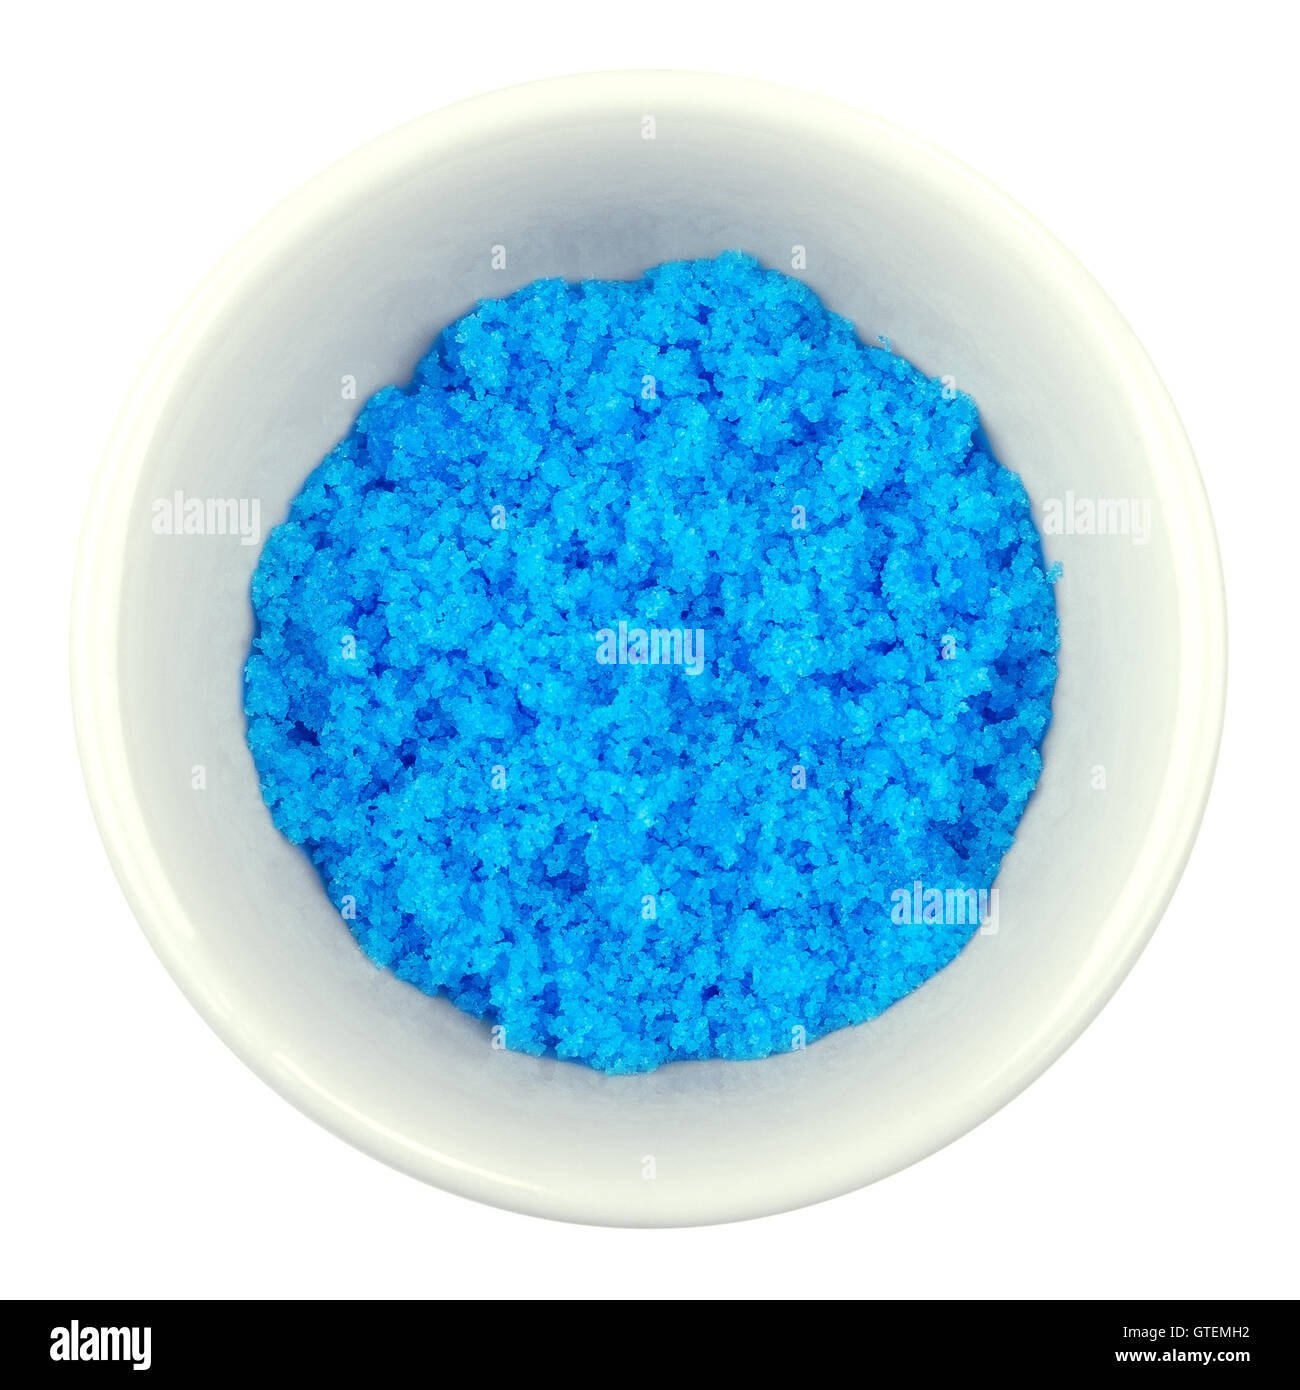 En sulfate cuivrique sur Bol en porcelaine blanche. Bleu lumineux du sulfate de cuivre CuSO4, aussi vitriol bleu ou pierre bleue. Banque D'Images